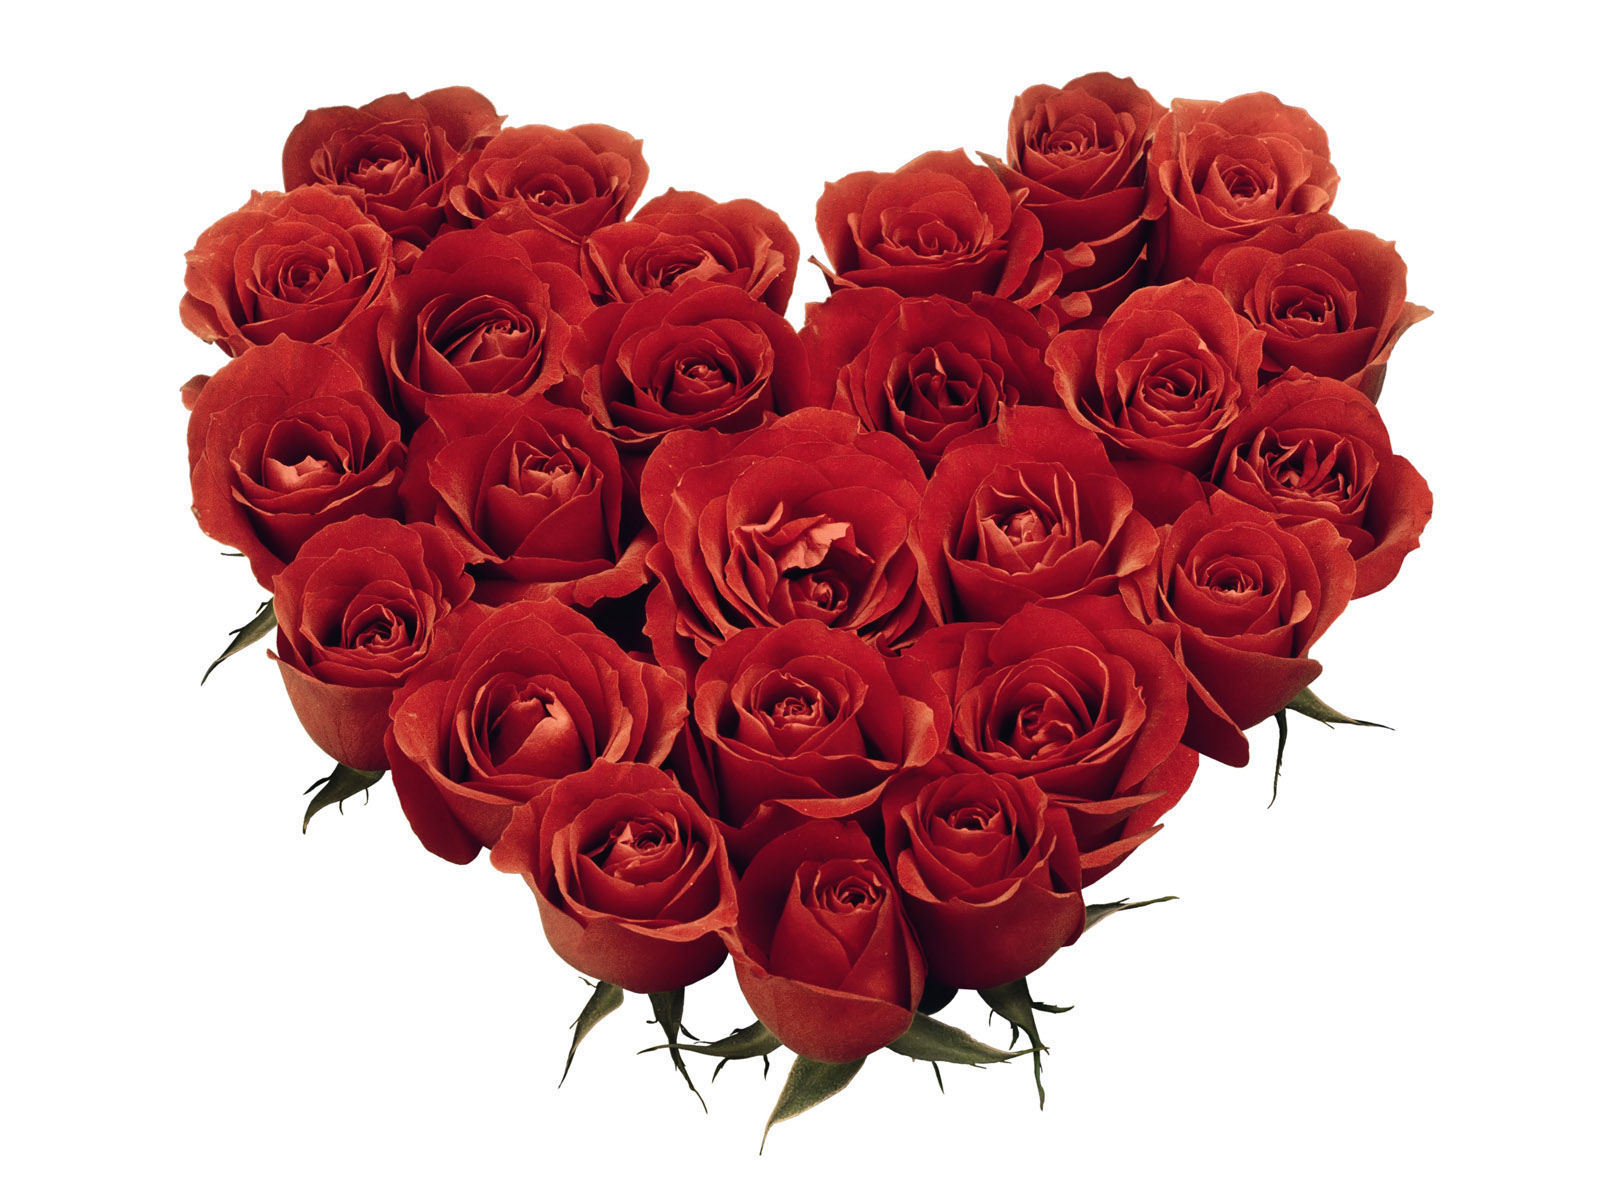 Ảnh hoa hồng nhung tạo hình quả tim tình yêu